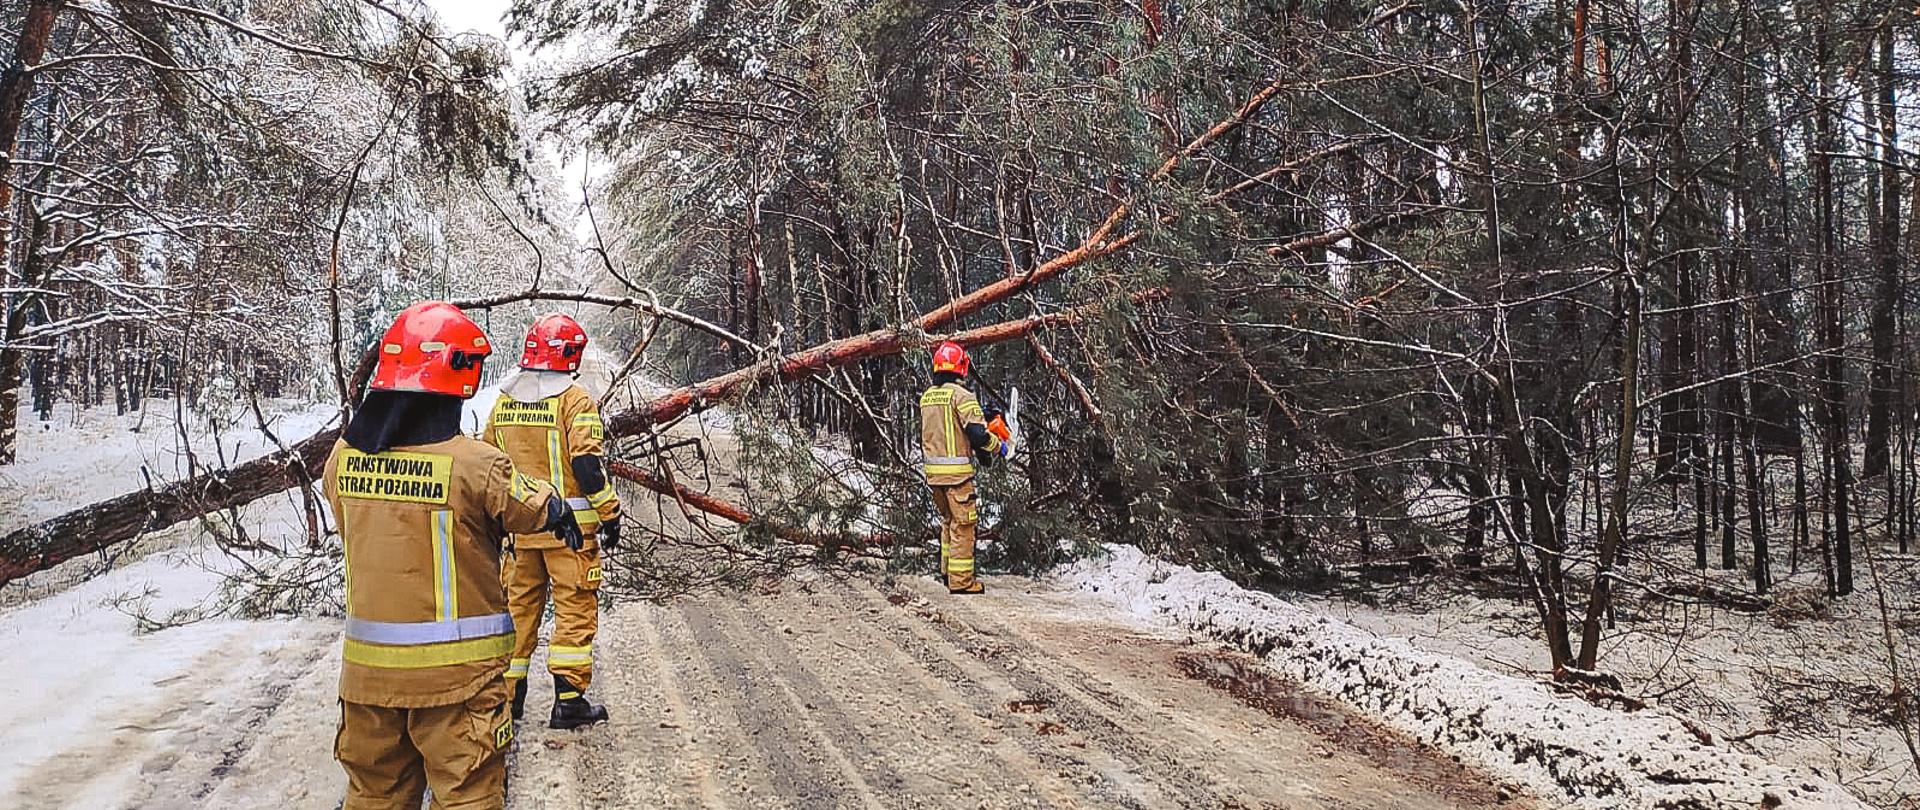 Strażacy wycinają drzewo, które pochyliło się nad drogą. Zdjęcie wykonane w porze zimowej